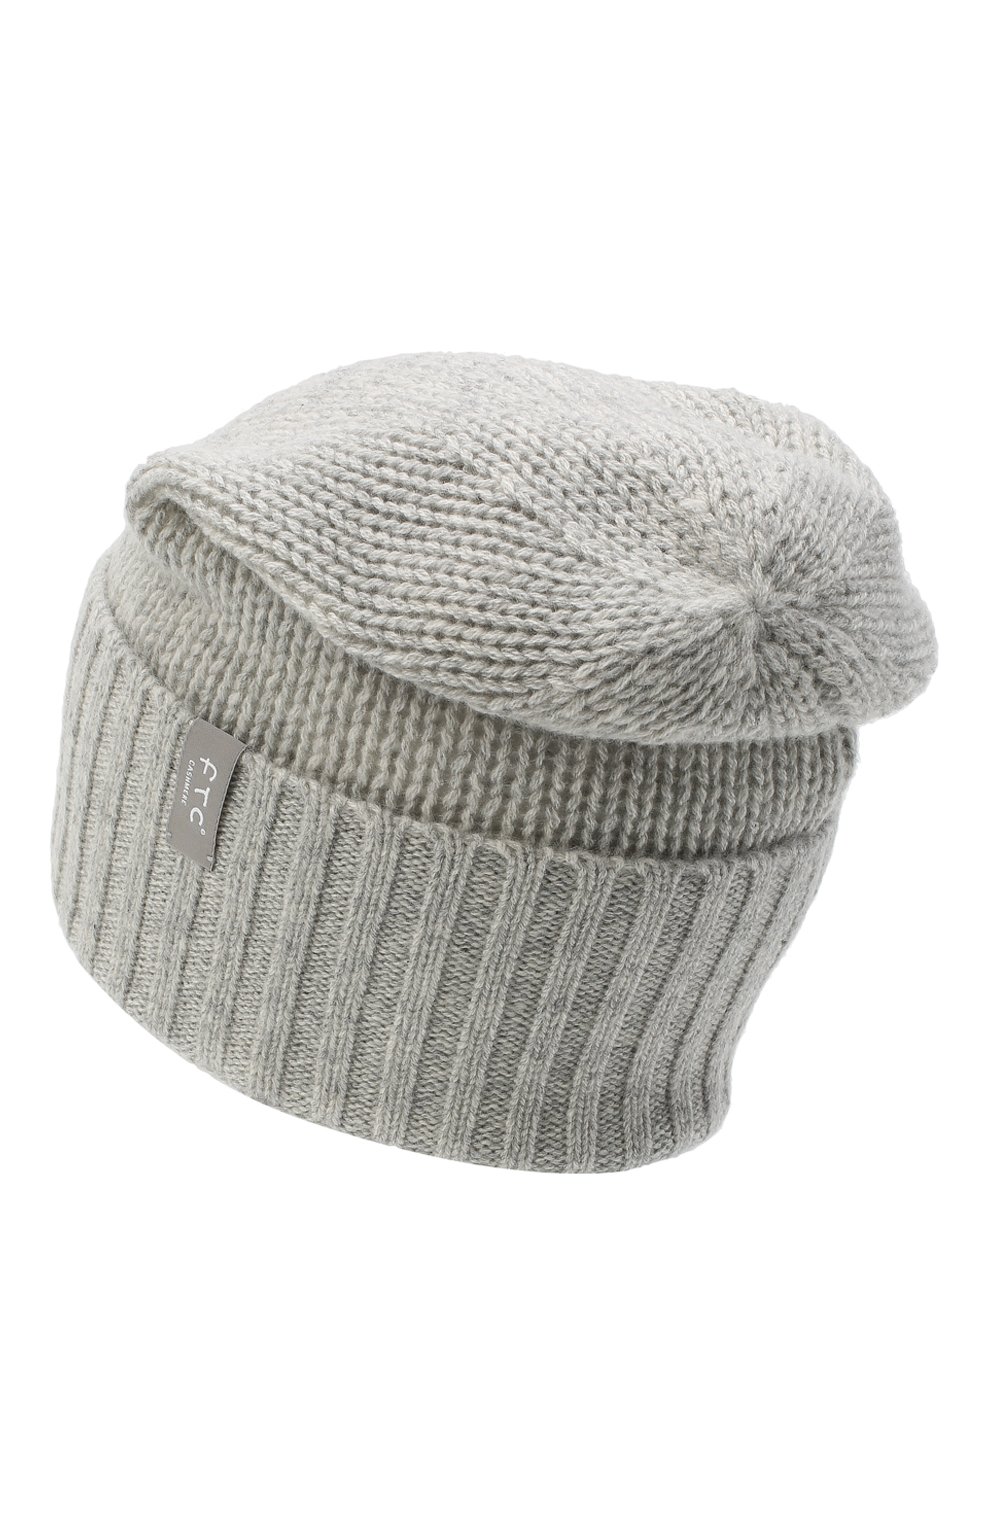 Женская кашемировая шапка FTC серого цвета, арт. 770-0950 | Фото 2 (Материал: Текстиль, Кашемир, Шерсть)